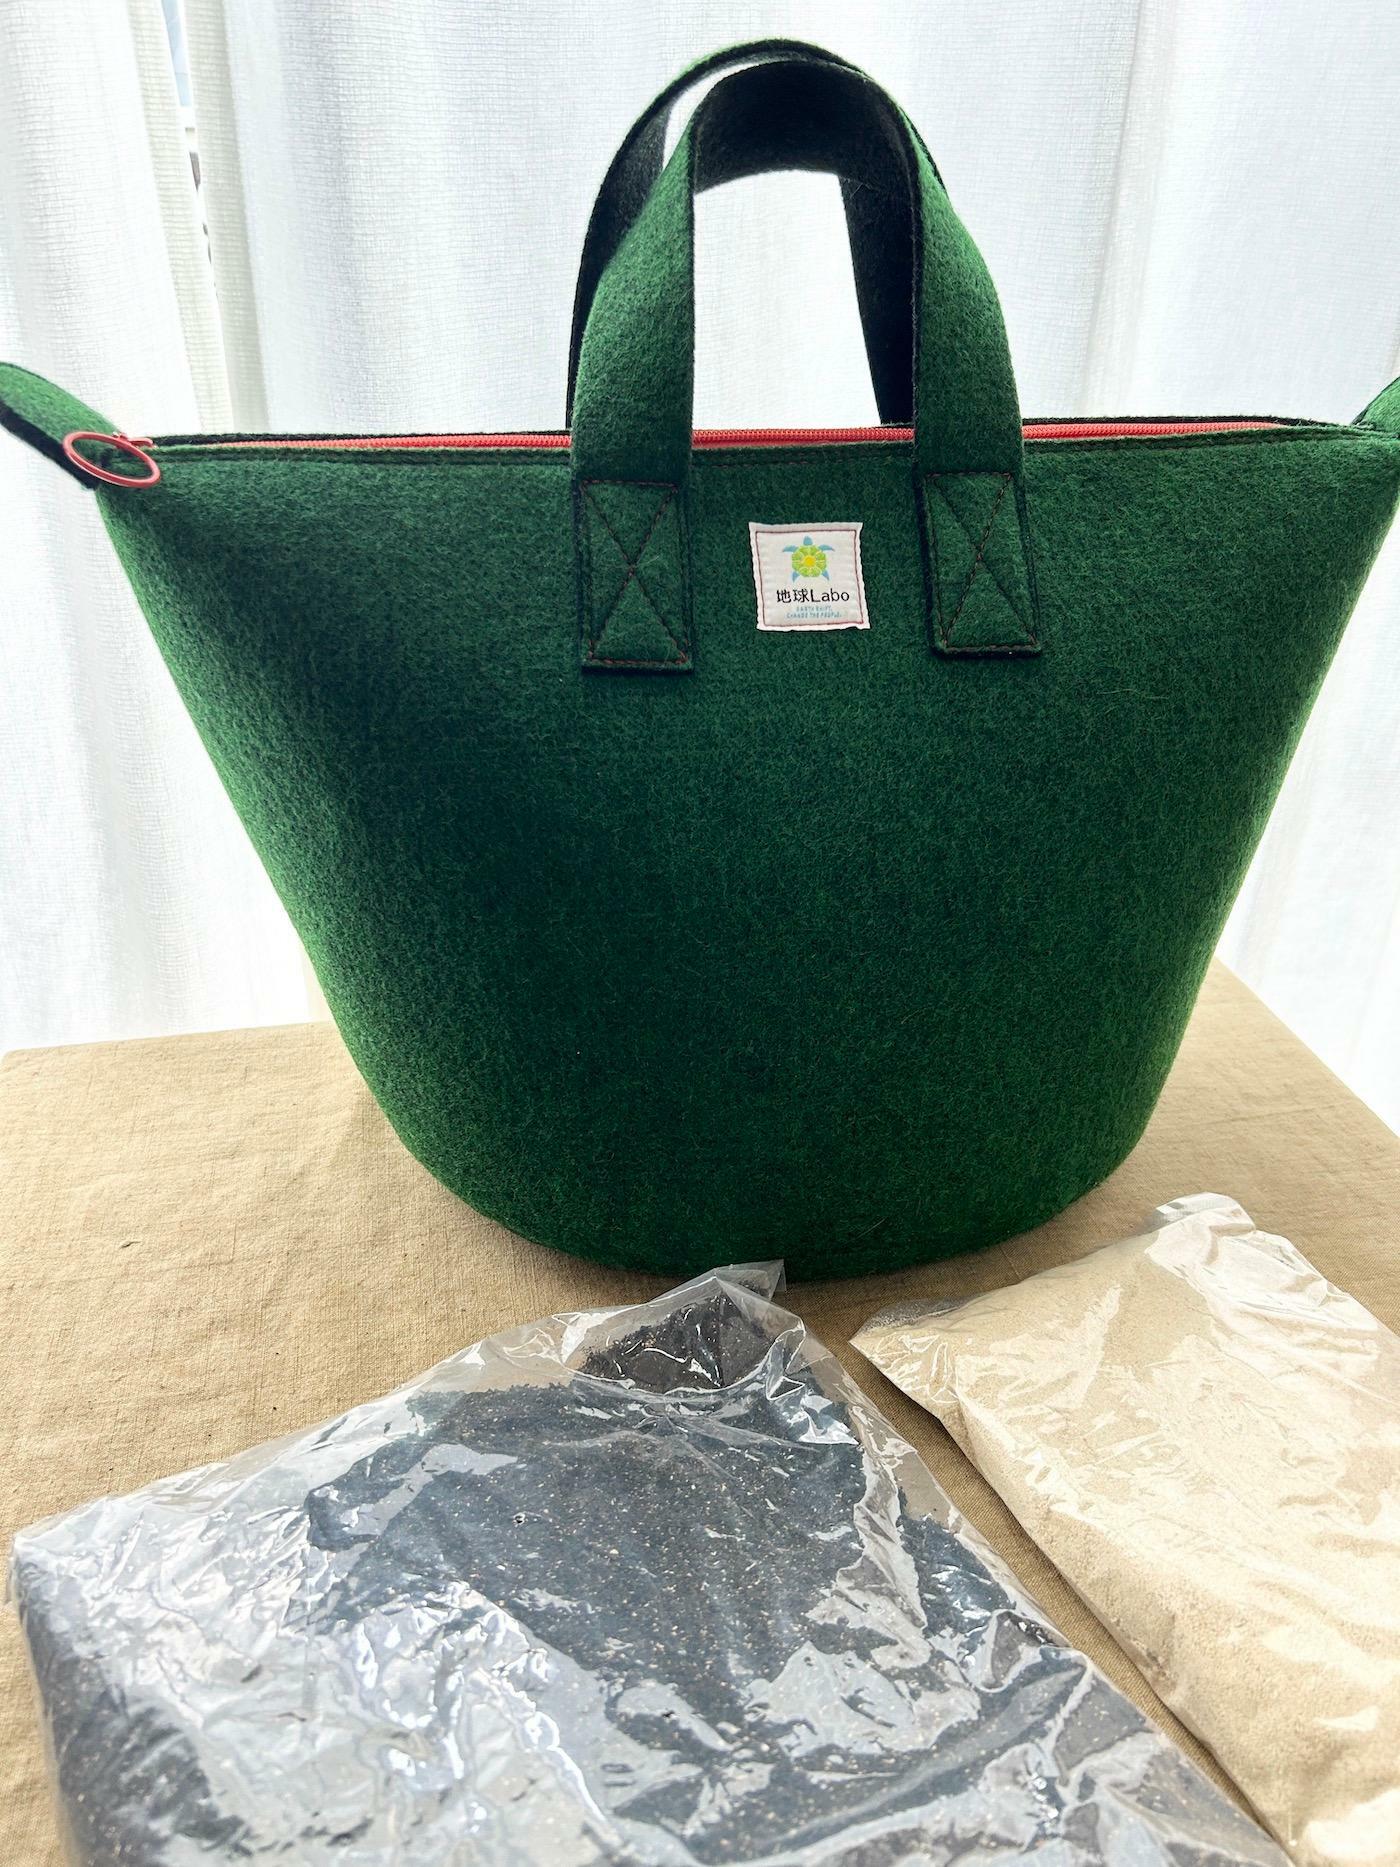 「地球Labo」が制作したこだわりの詰まった「コンポストバッグ」と「基材」。すべて日本製です